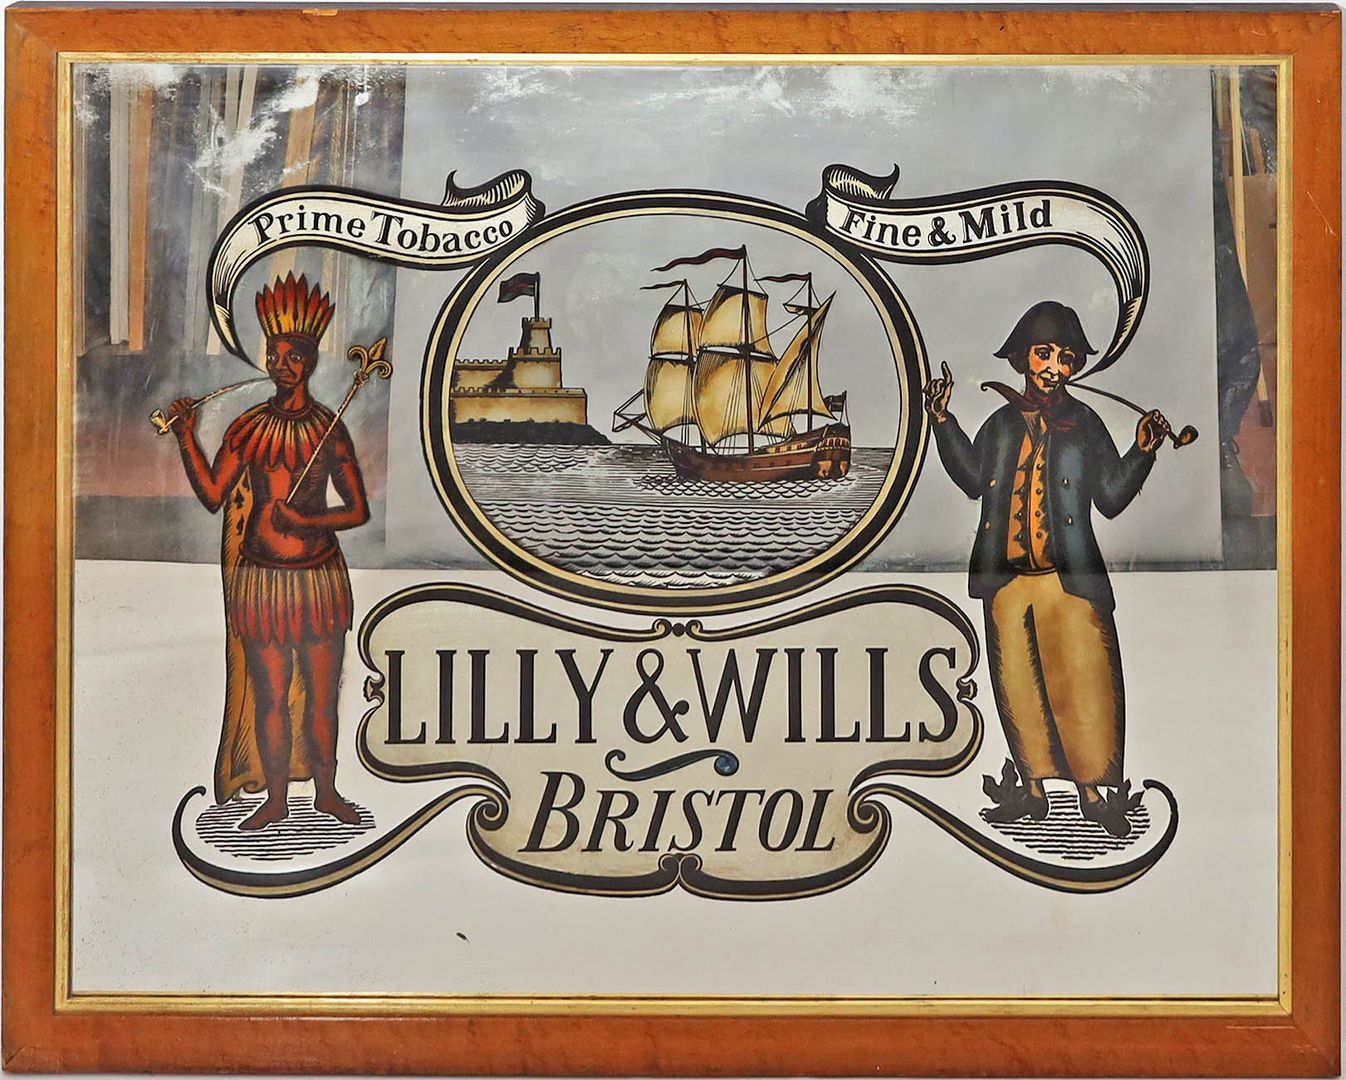 Werbeschild "TABACCO LILLY & WILLS BRISTOL".